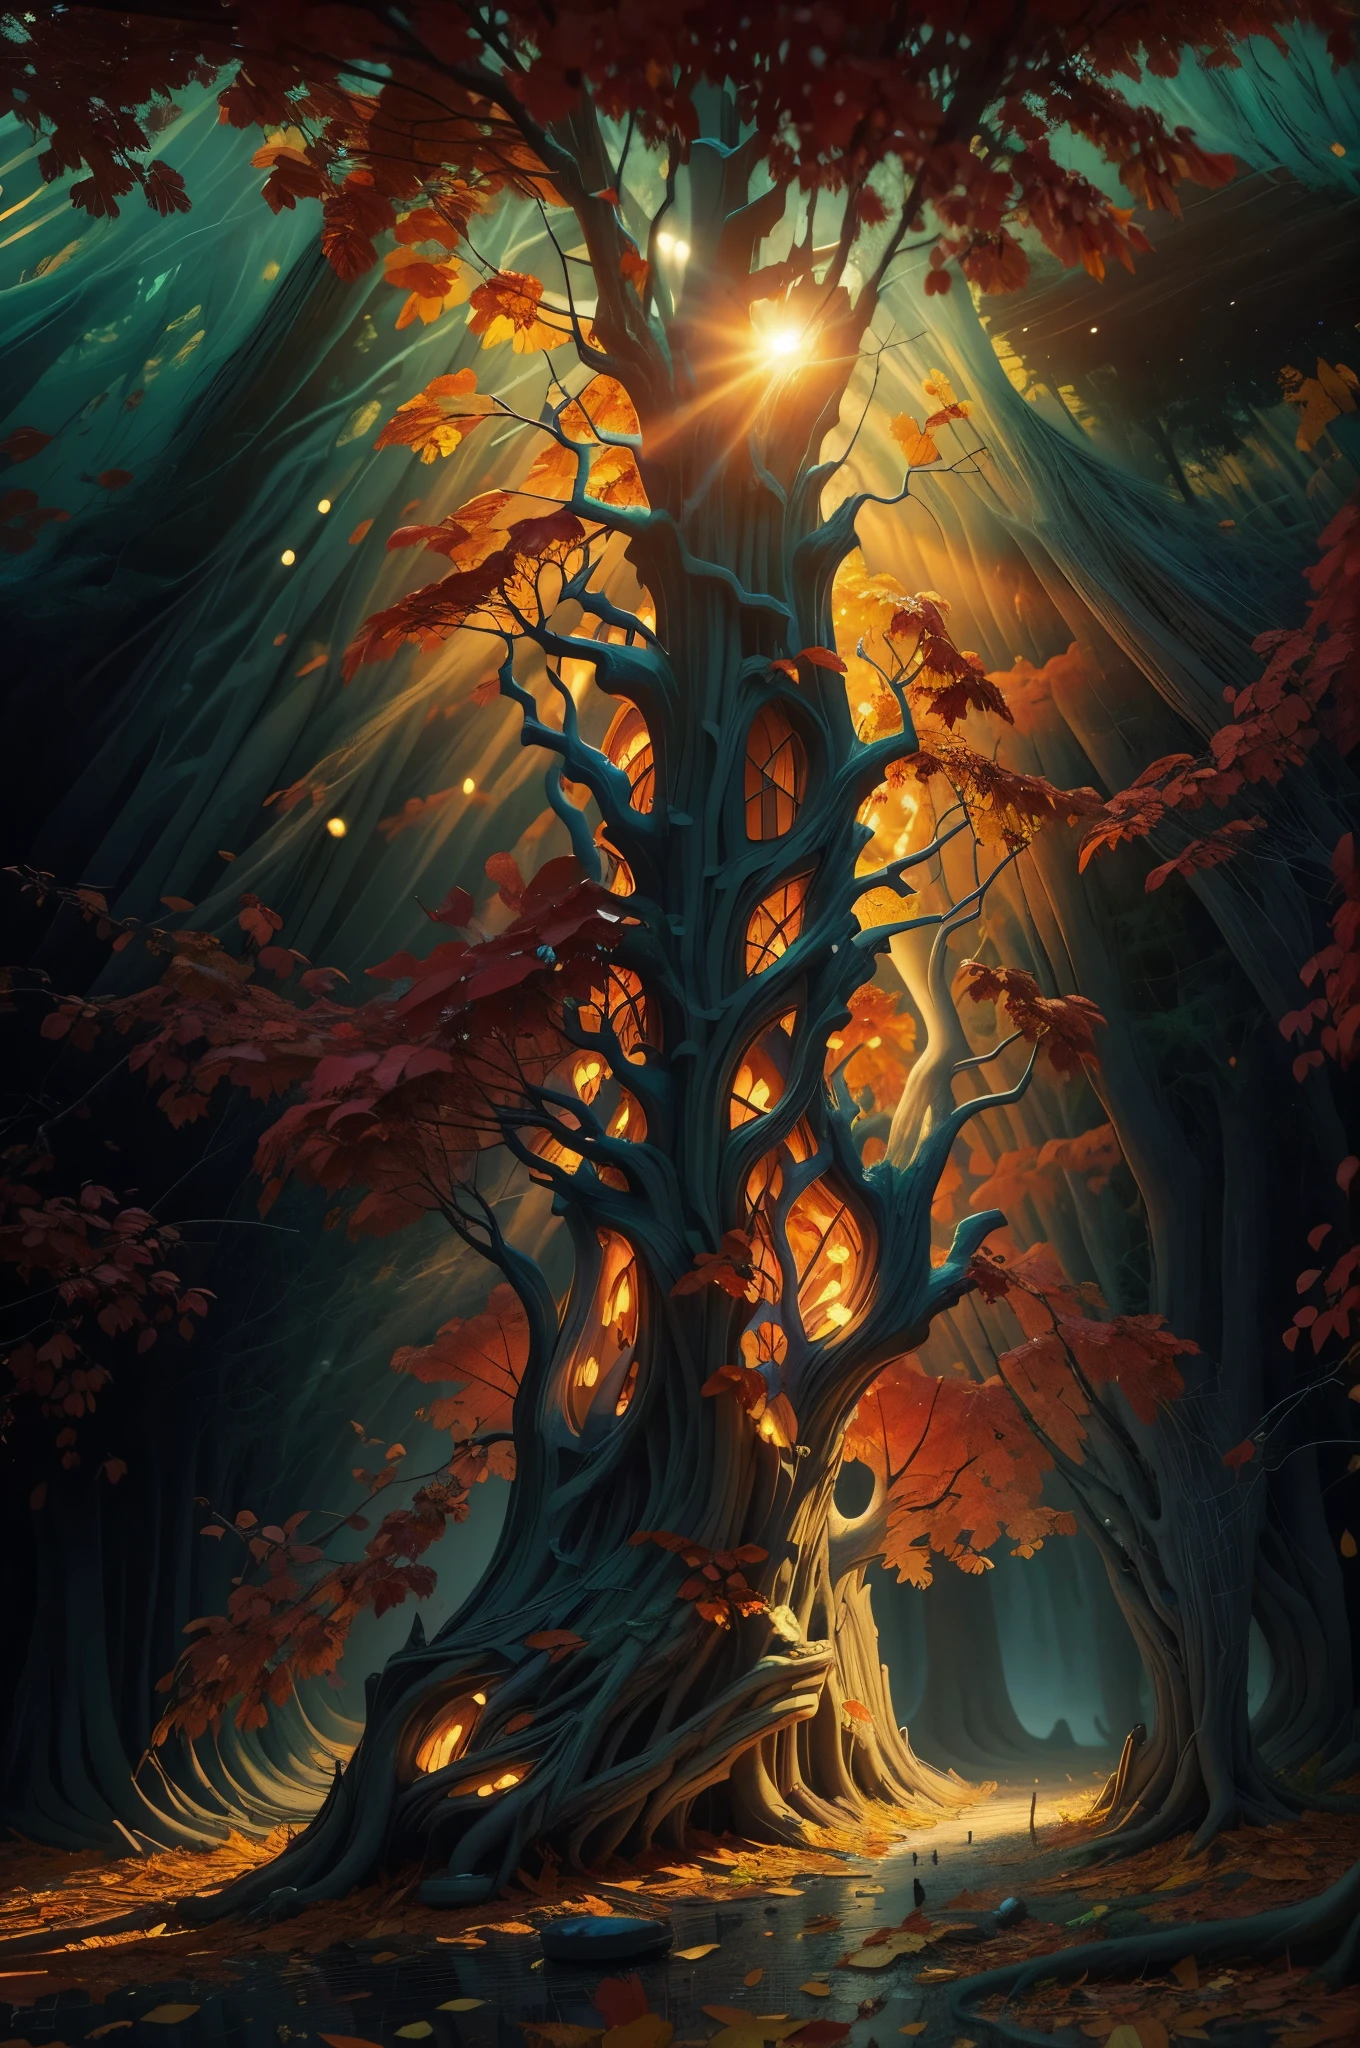 리노컷: 므두셀라의 울퉁불퉁하고 움푹 패인 나무에서 가을 오래된 나무 라인, 스파클링 스왈로우 웅덩이, 낙엽과 함께. 잿빛 나뭇잎 사이로 비치는 빛이 작은 물방울에 반짝인다, 수백만 개의 작은 풍경 종소리에 맞춰 소리의 리듬과 함께 빛의 움직임, 반딧불이는 소리처럼 움직인다, 생생한 따뜻한 색상. 원포인트 관점, 페이딩. István Orosz와 Josephine Wall, Takashi Murakami의 스타일로.